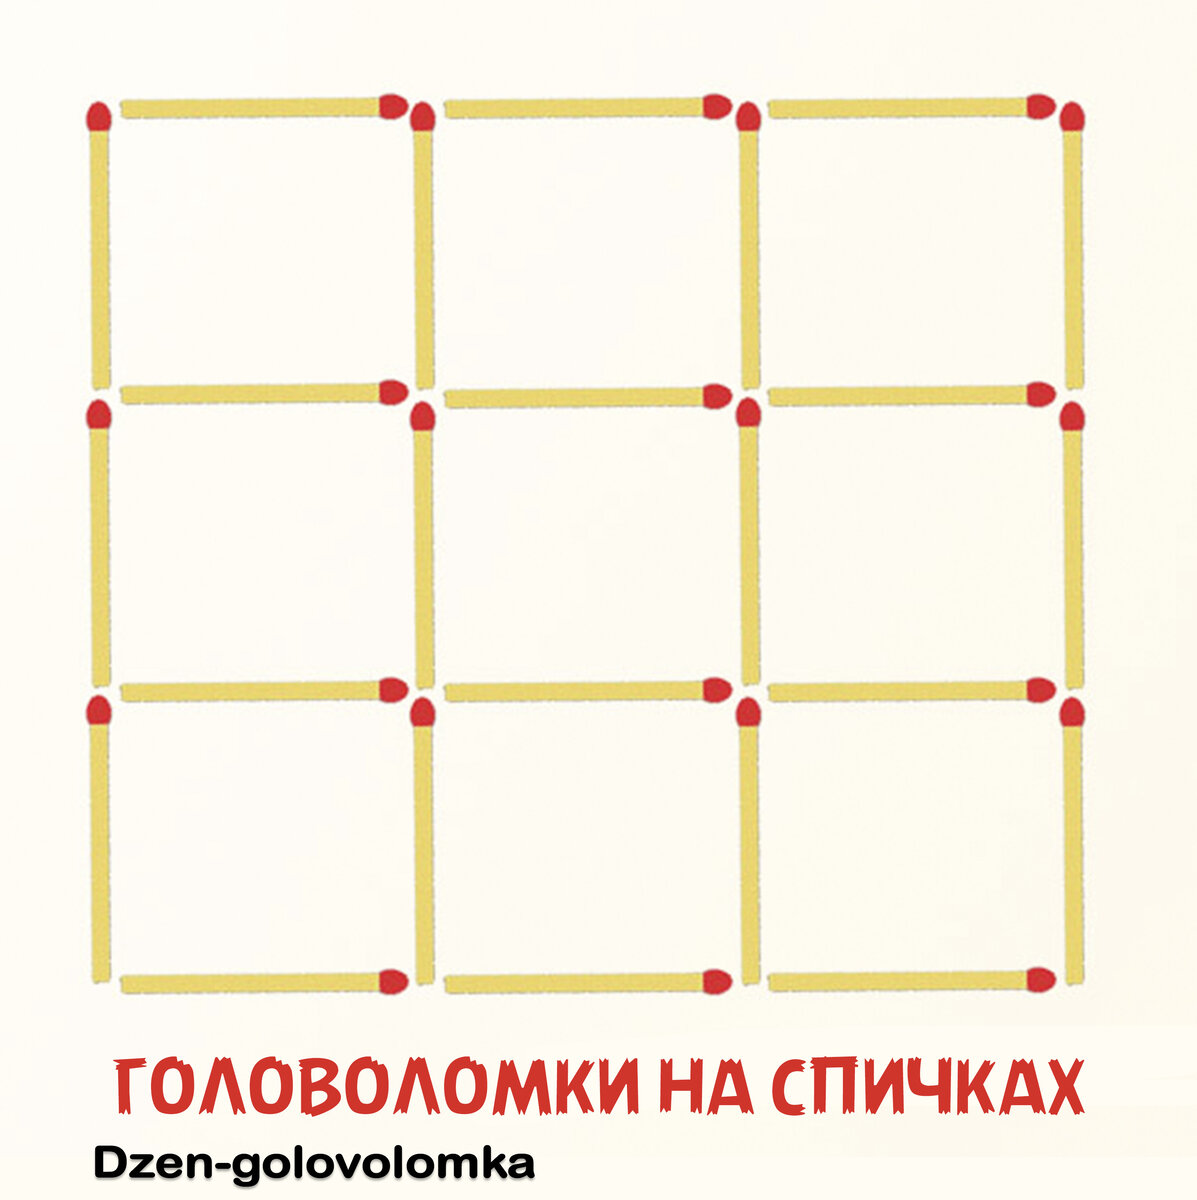 Ответы rov-hyundai.ru: Как сложить из 6 спичек 3 равносторонних треугольника?Не ломая спичек?